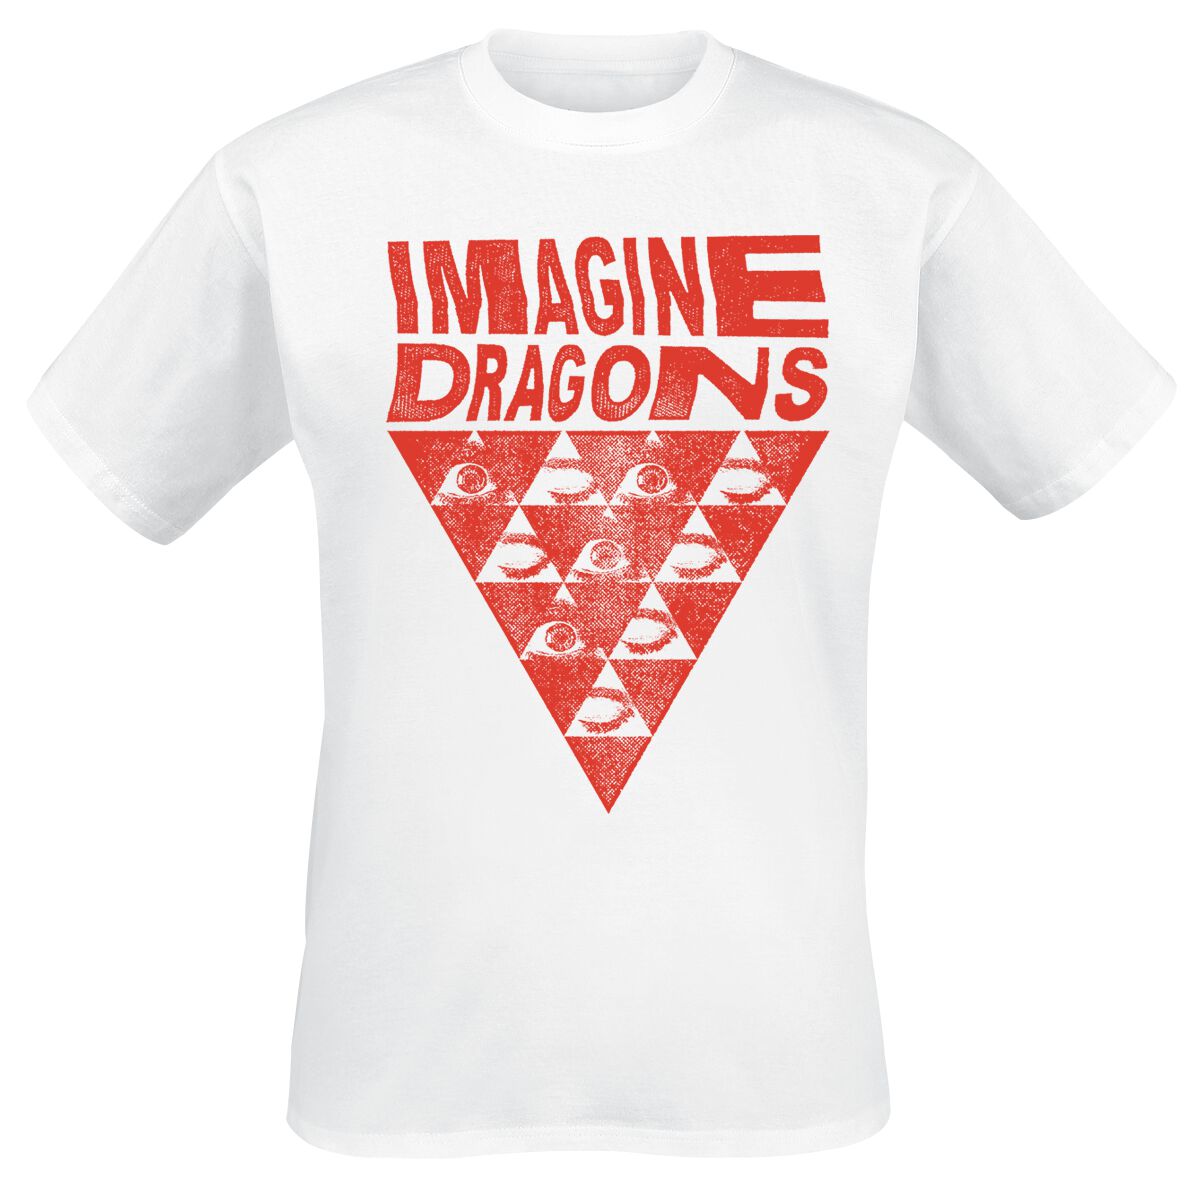 Imagine Dragons T-Shirt - Eyes - S bis 3XL - für Männer - Größe XL - weiß  - Lizenziertes Merchandise! - Männer - male